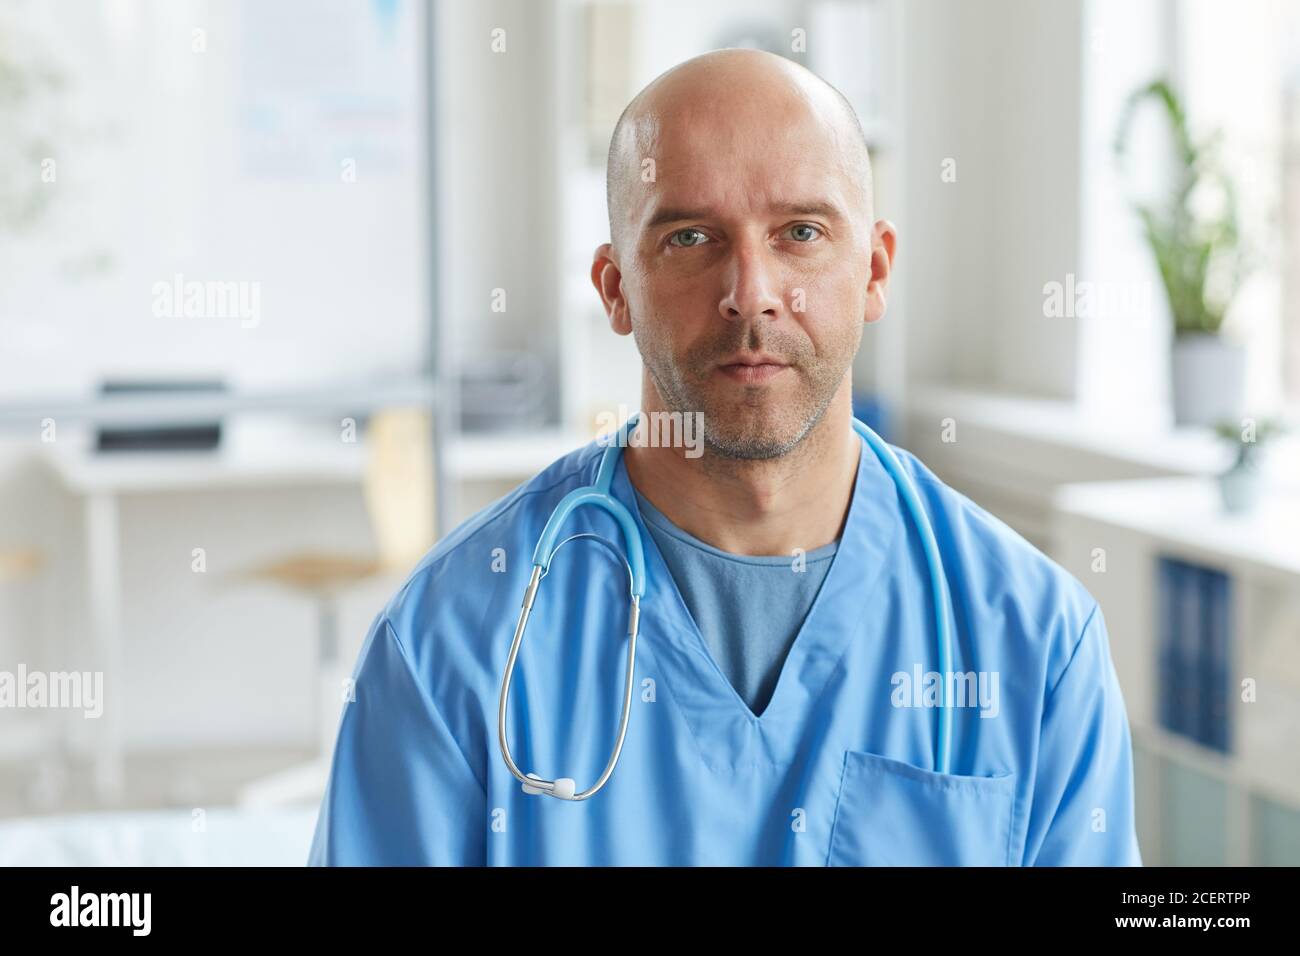 Foto de retrato de primer plano mediana de un médico maduro con uniforme azul mirando la cámara con una expresión facial seria Foto de stock